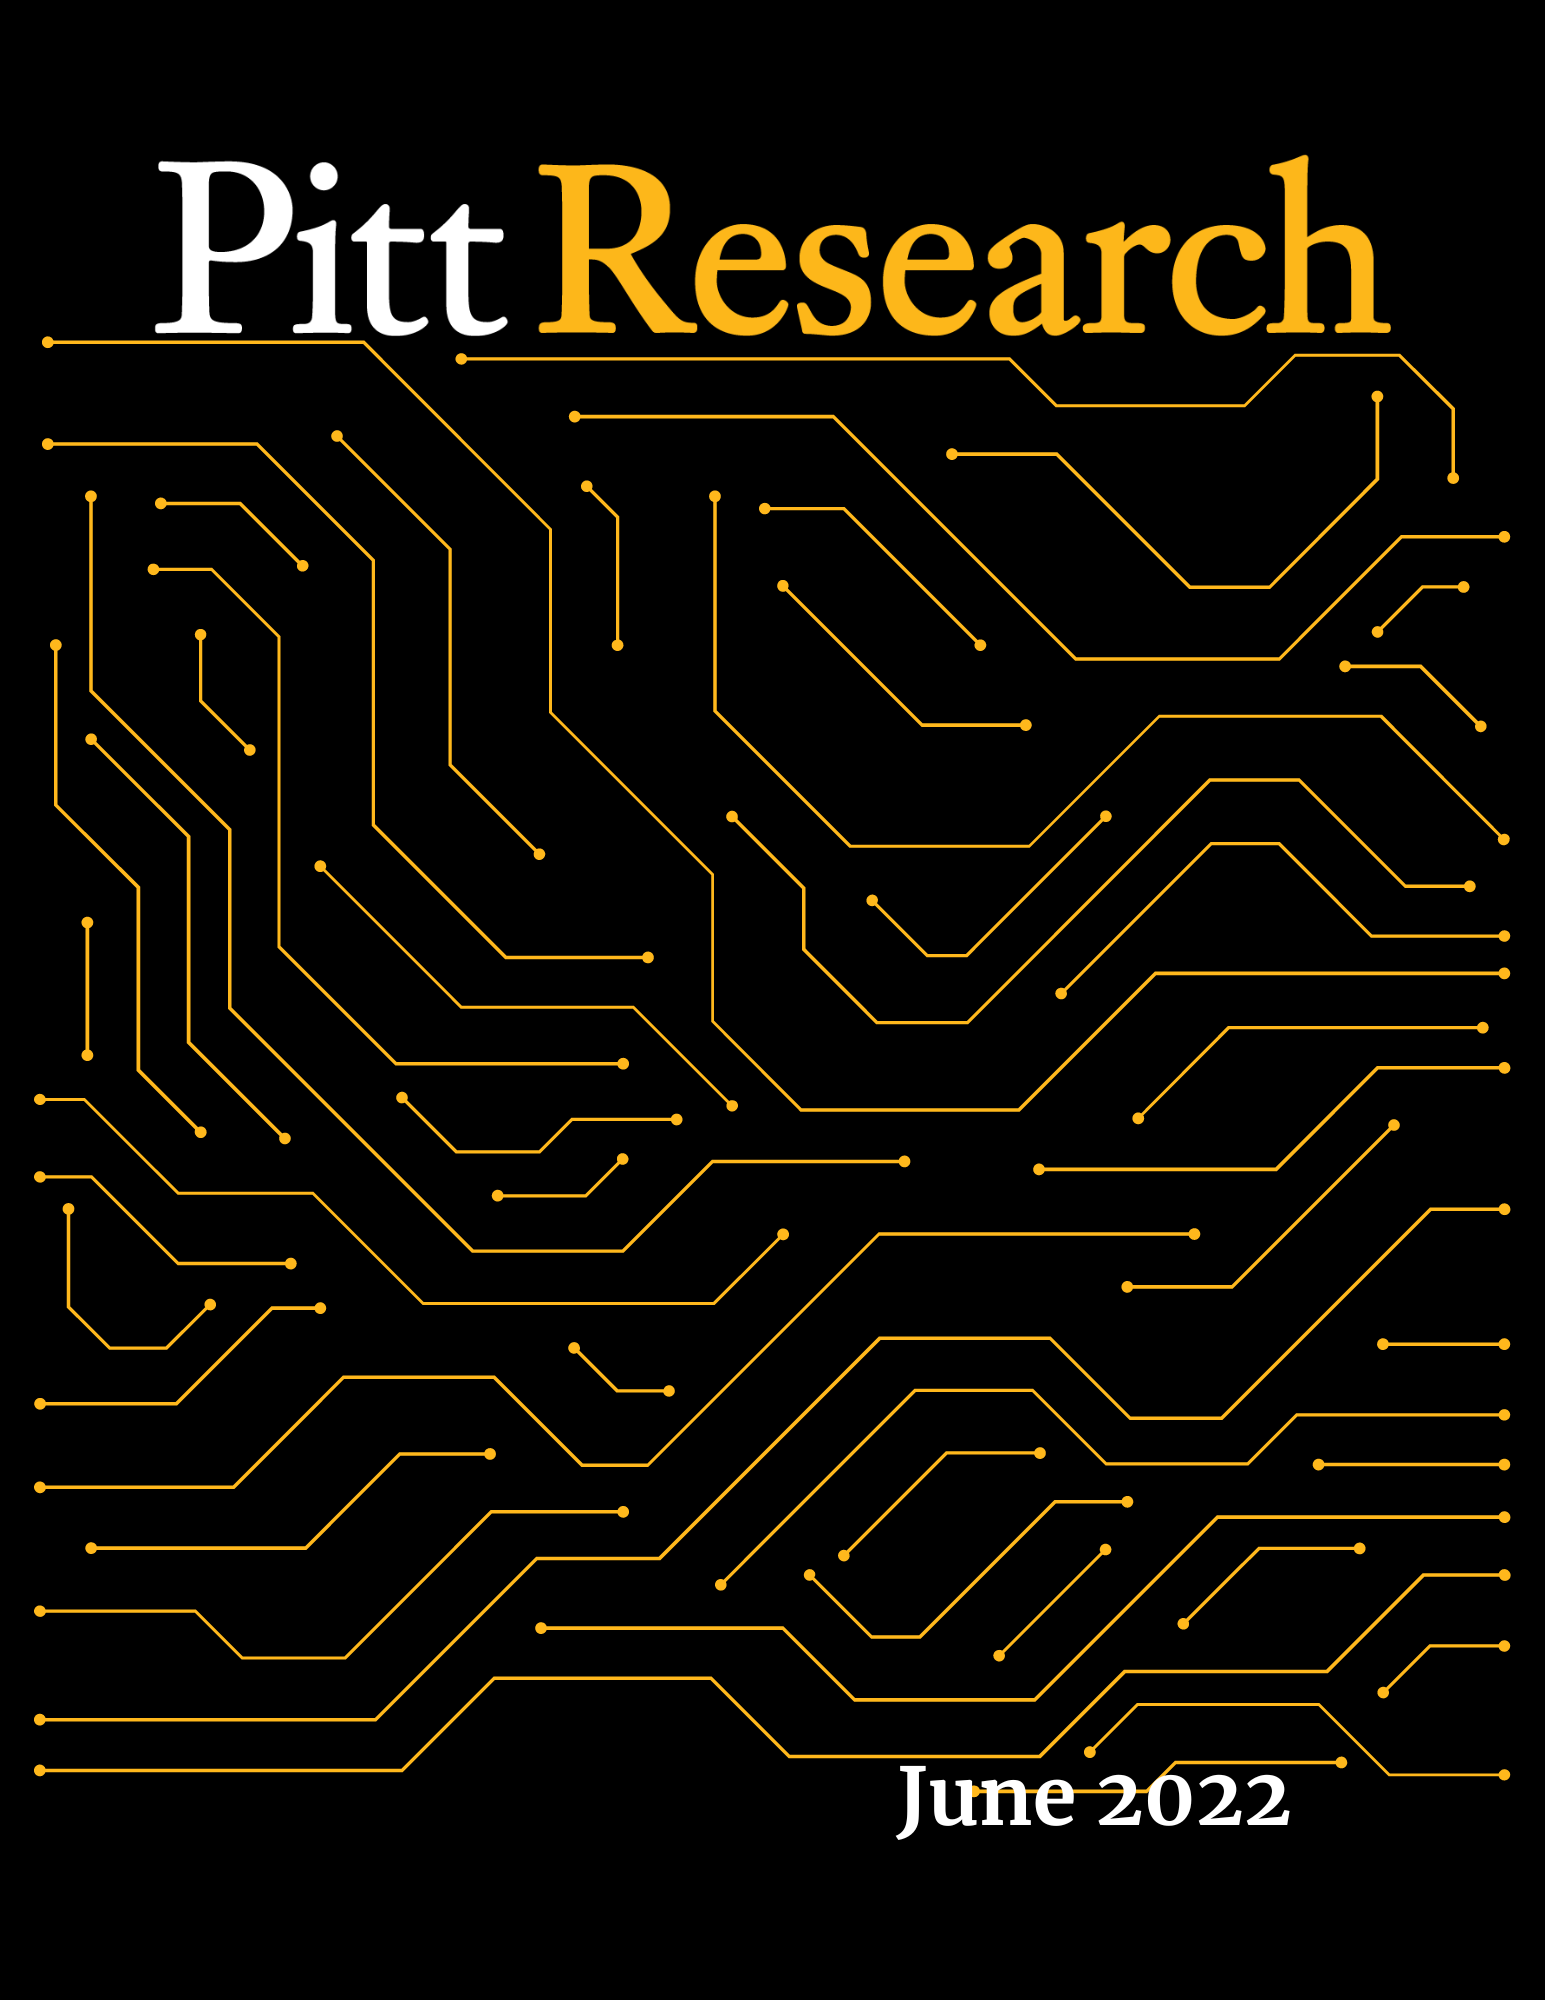 Pitt Research Newsletter for June 2022